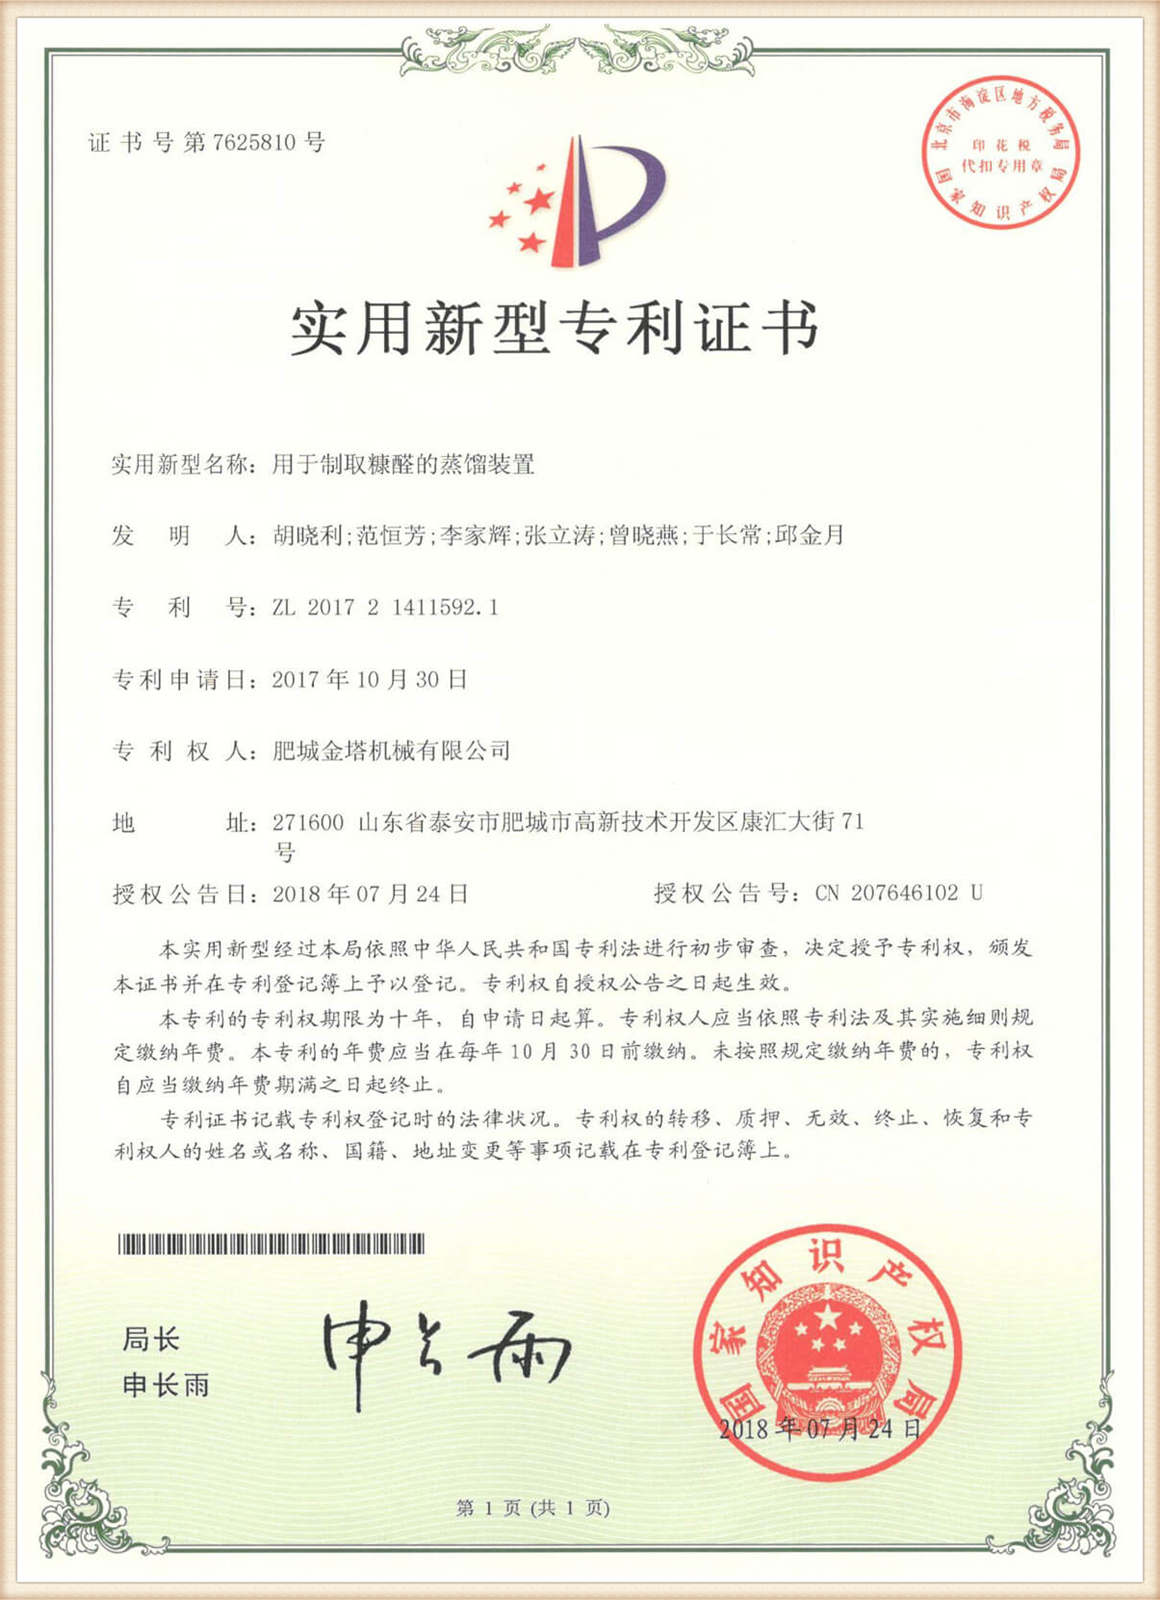 प्यान्ट प्रमाणीकरण01